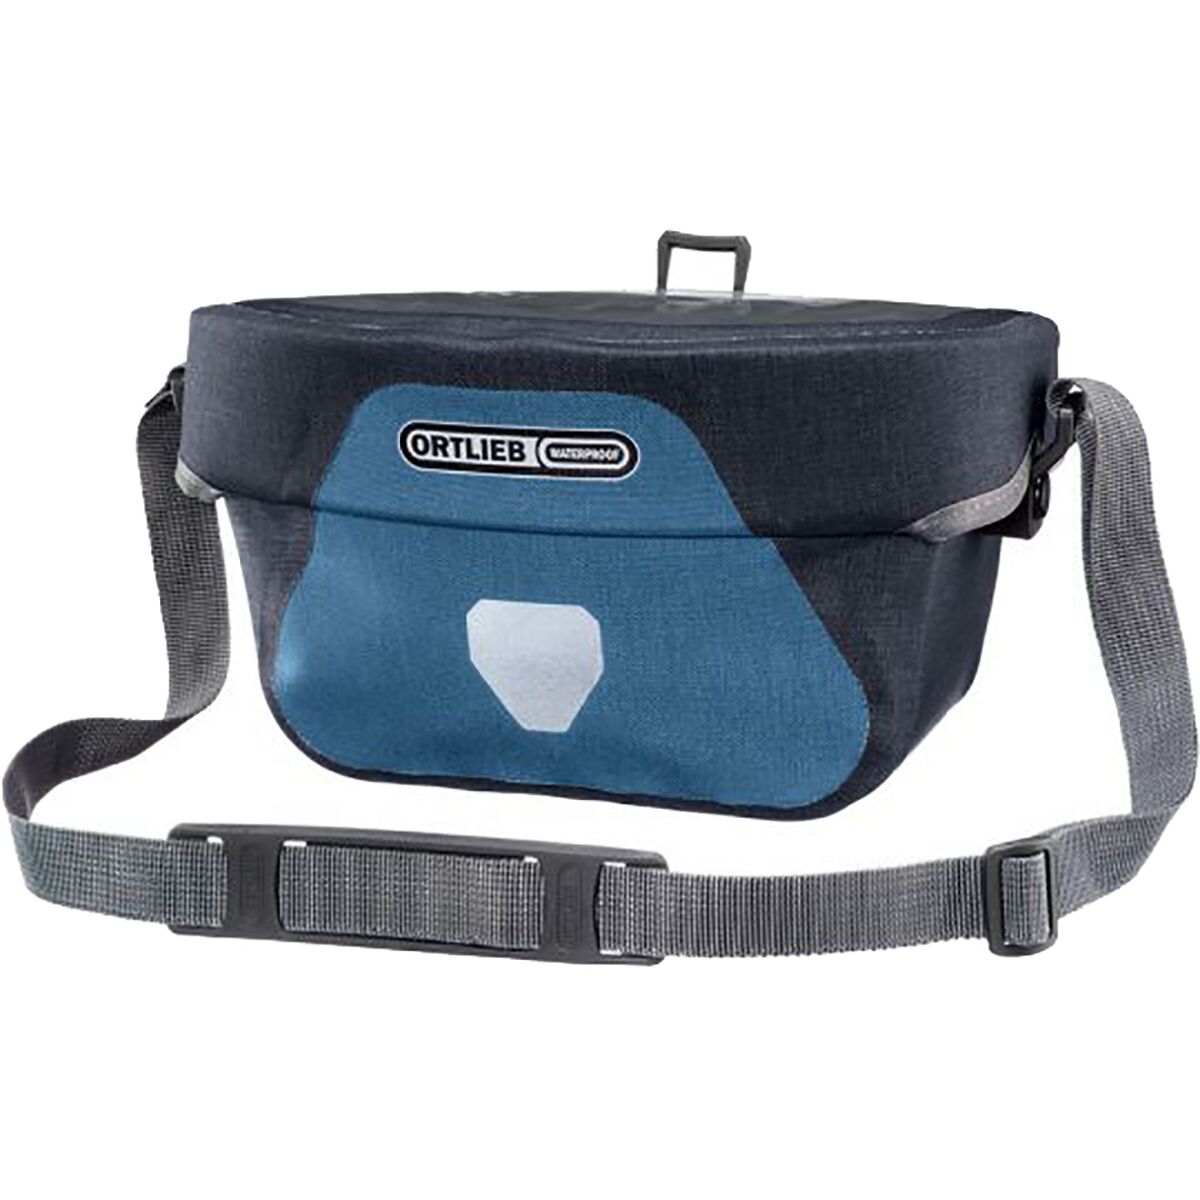 Ortlieb Ultimate 6 Plus 5-8.5L Handlebar Bag